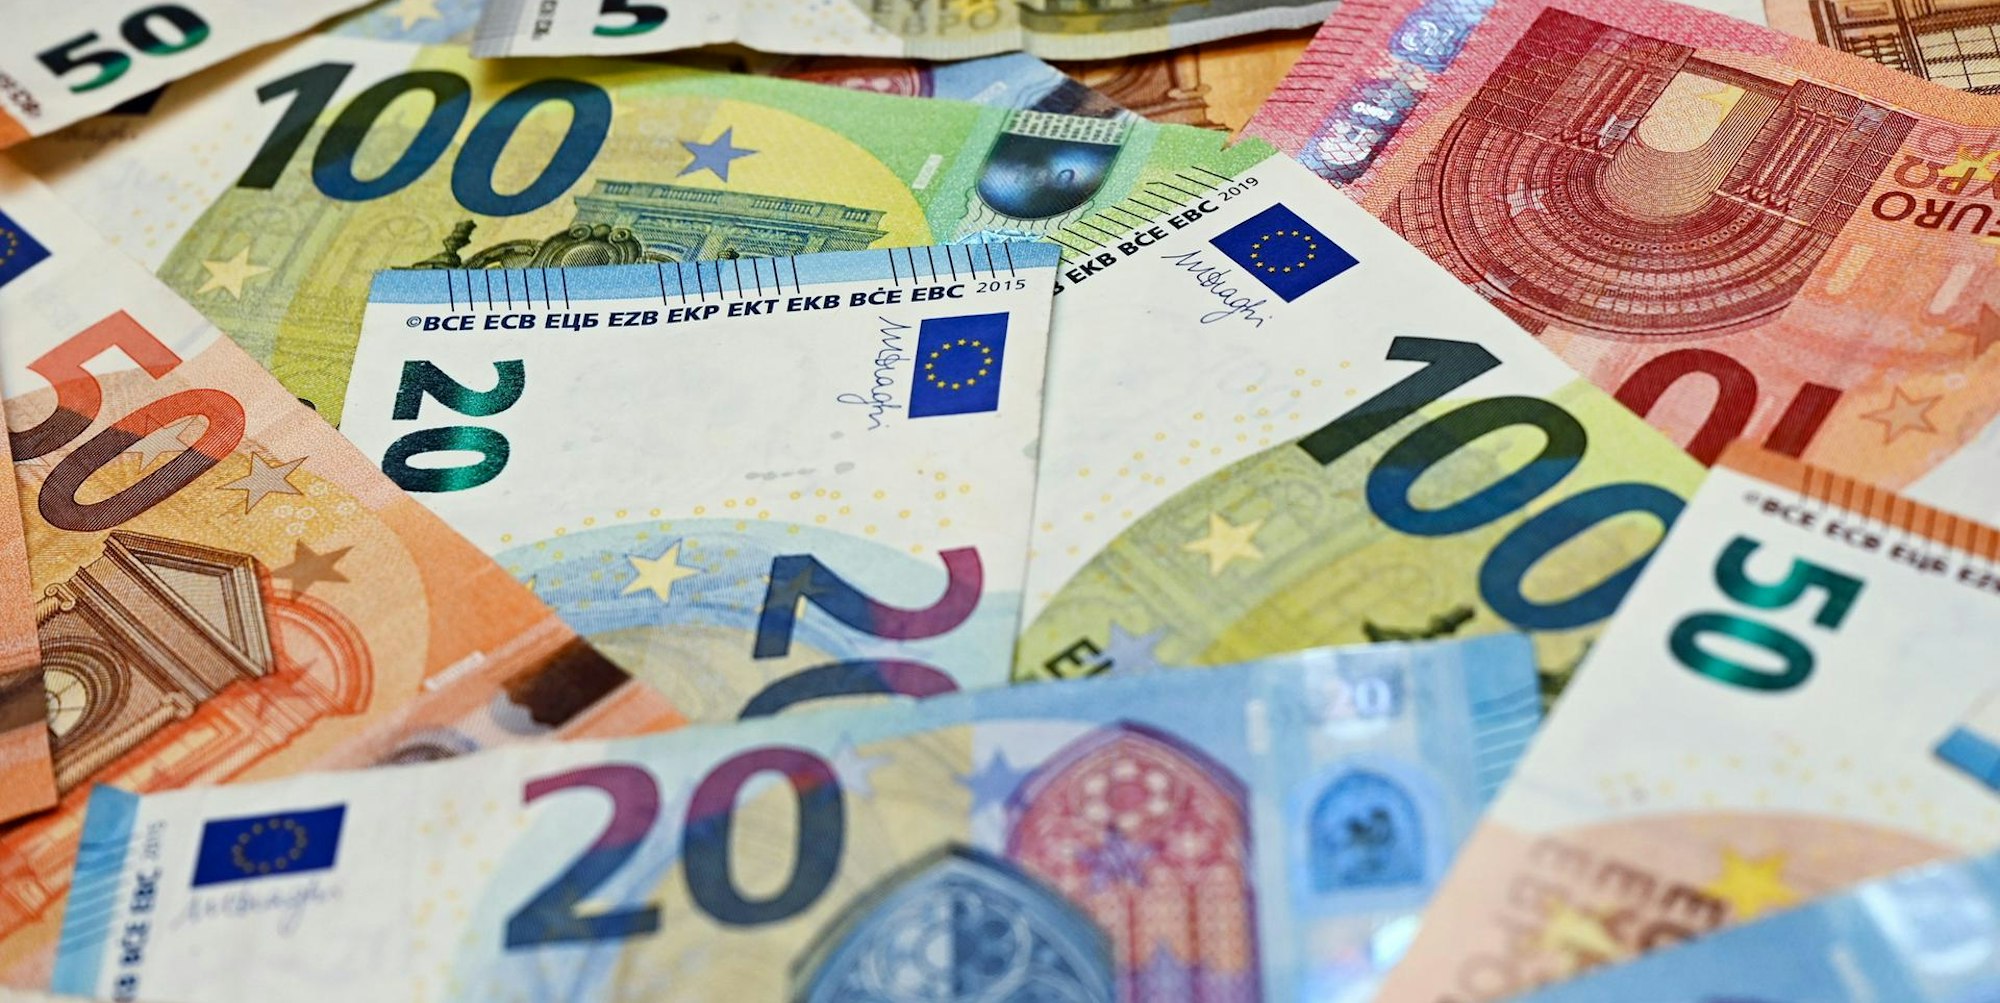 Symbolbild Geld Euroscheine